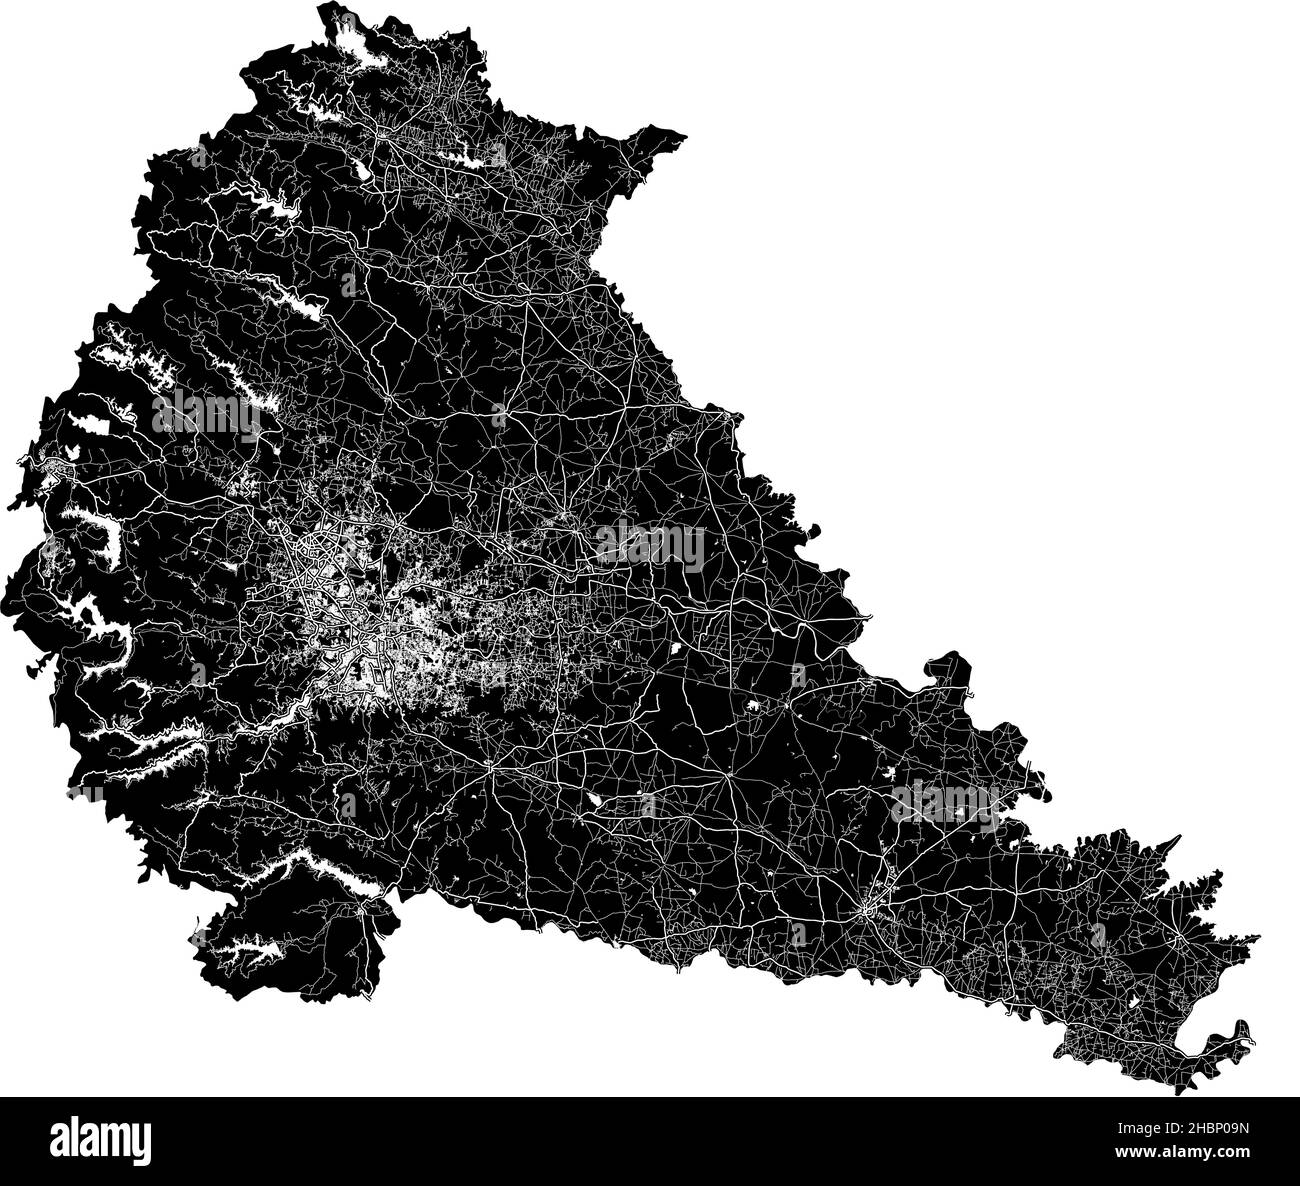 Pune, India, mappa vettoriale ad alta risoluzione con confini della città e percorsi modificabili. La mappa della città è stata disegnata con aree bianche e linee per le strade principali, si Illustrazione Vettoriale